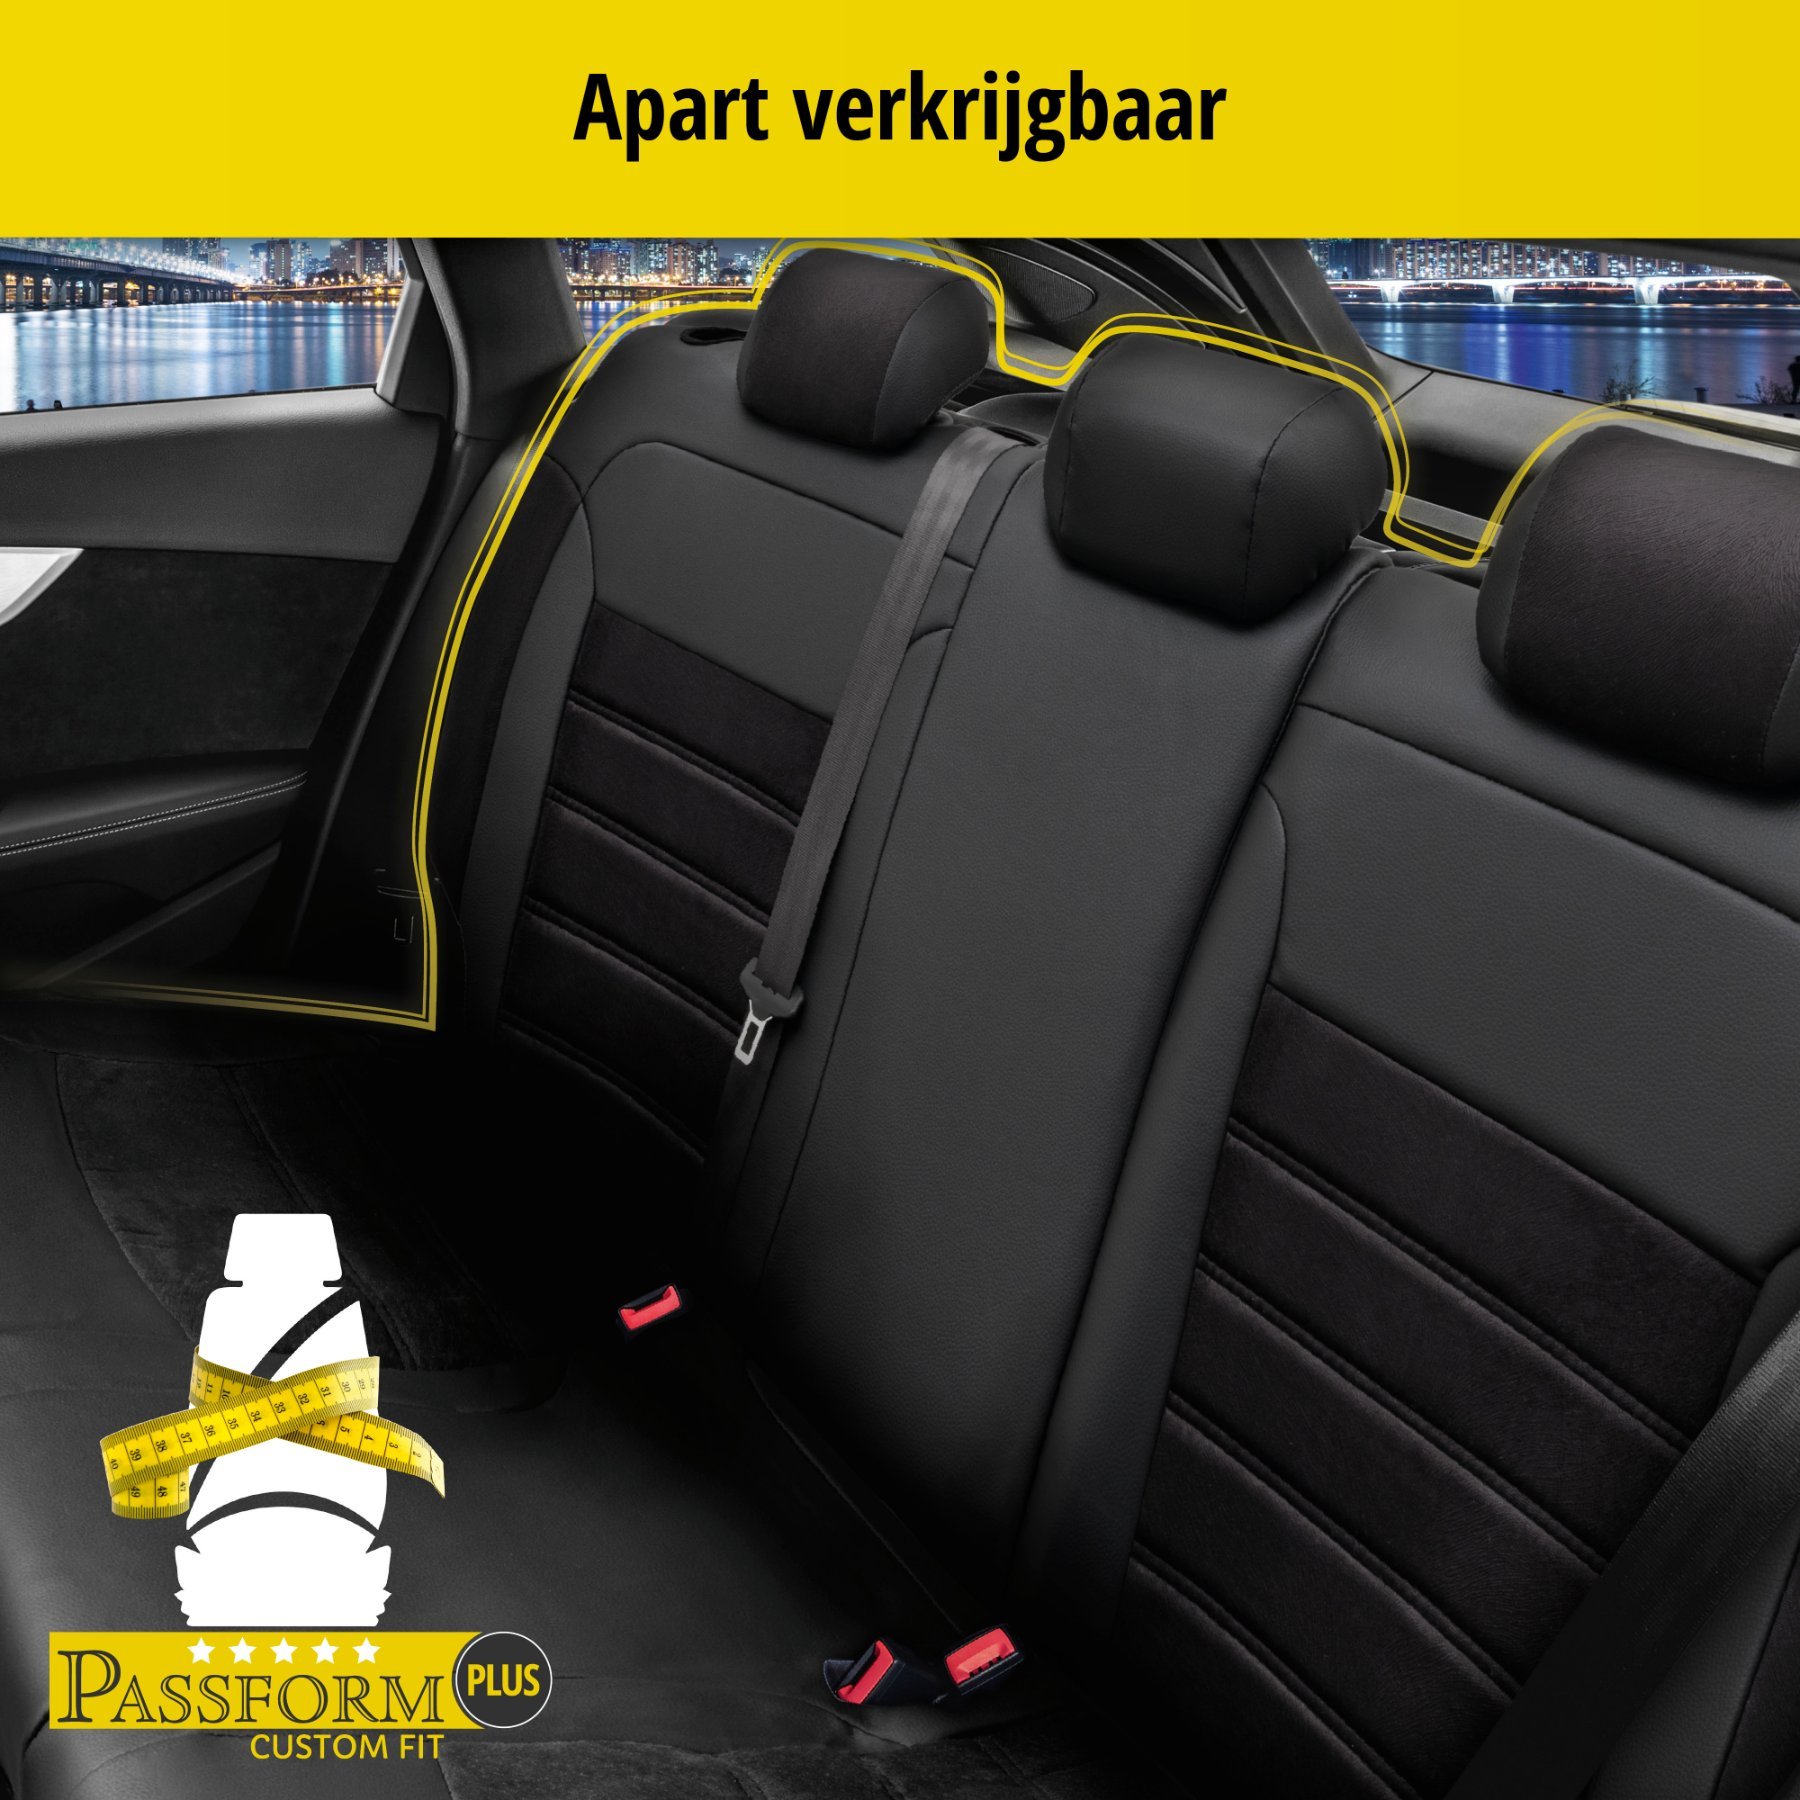 Auto stoelbekleding Bari geschikt voor Seat Leon (1P1) 05/2005-12/2013, 2 enkele zetelhoezen voor standard zetels